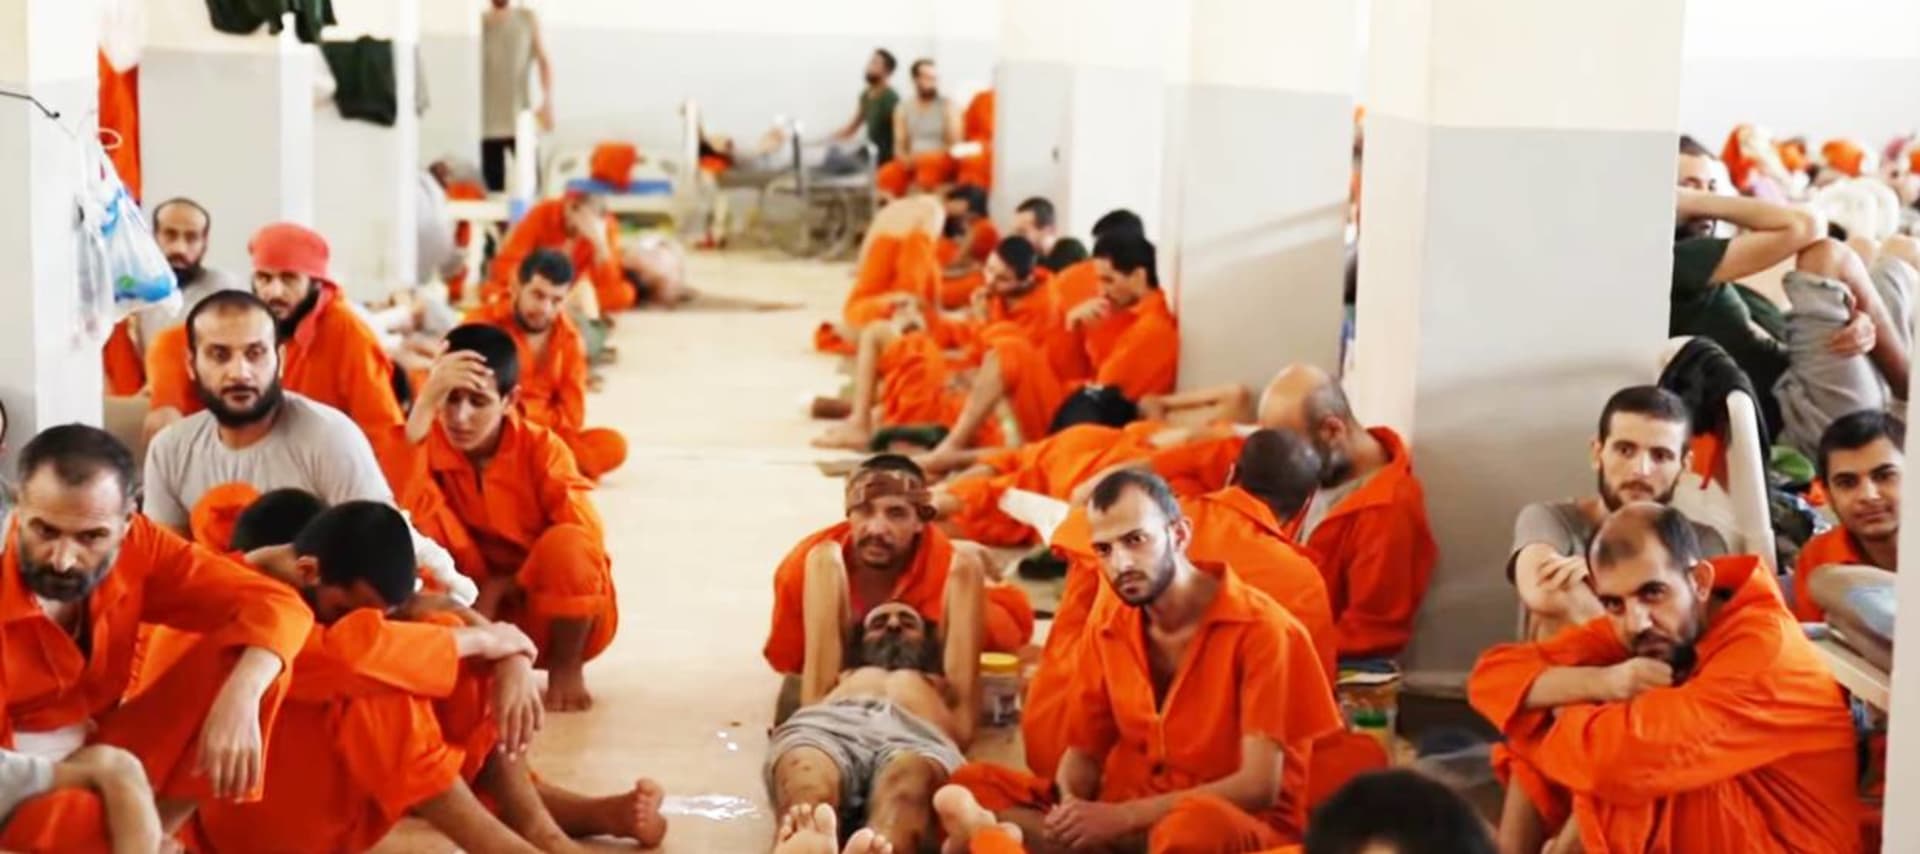 bojovníci ISIL v deportačním centru